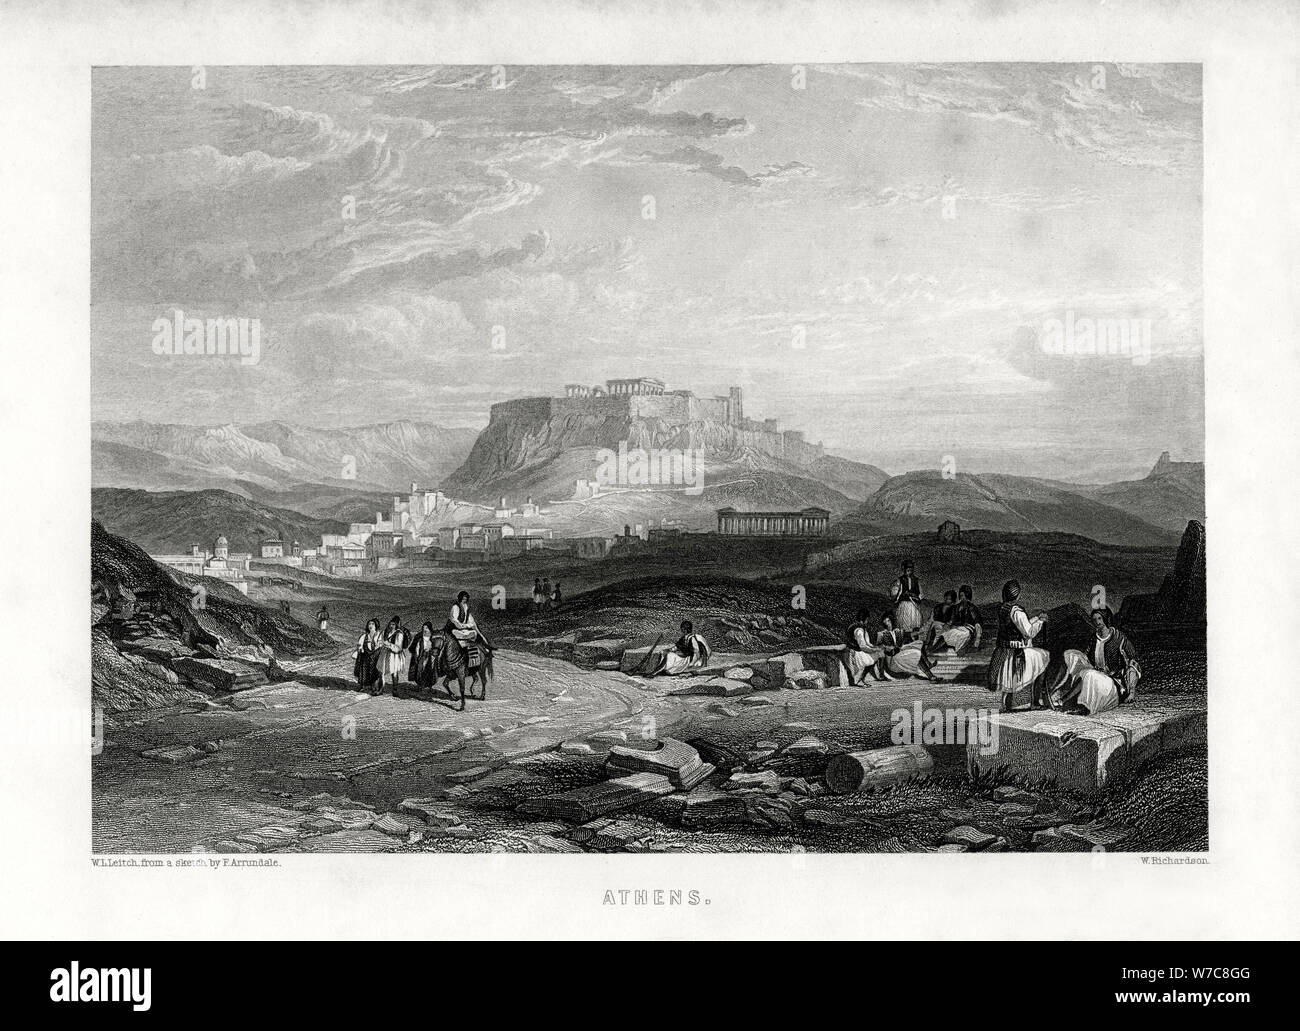 'Athens', Greece, 1887. Artist: W Richardson Stock Photo